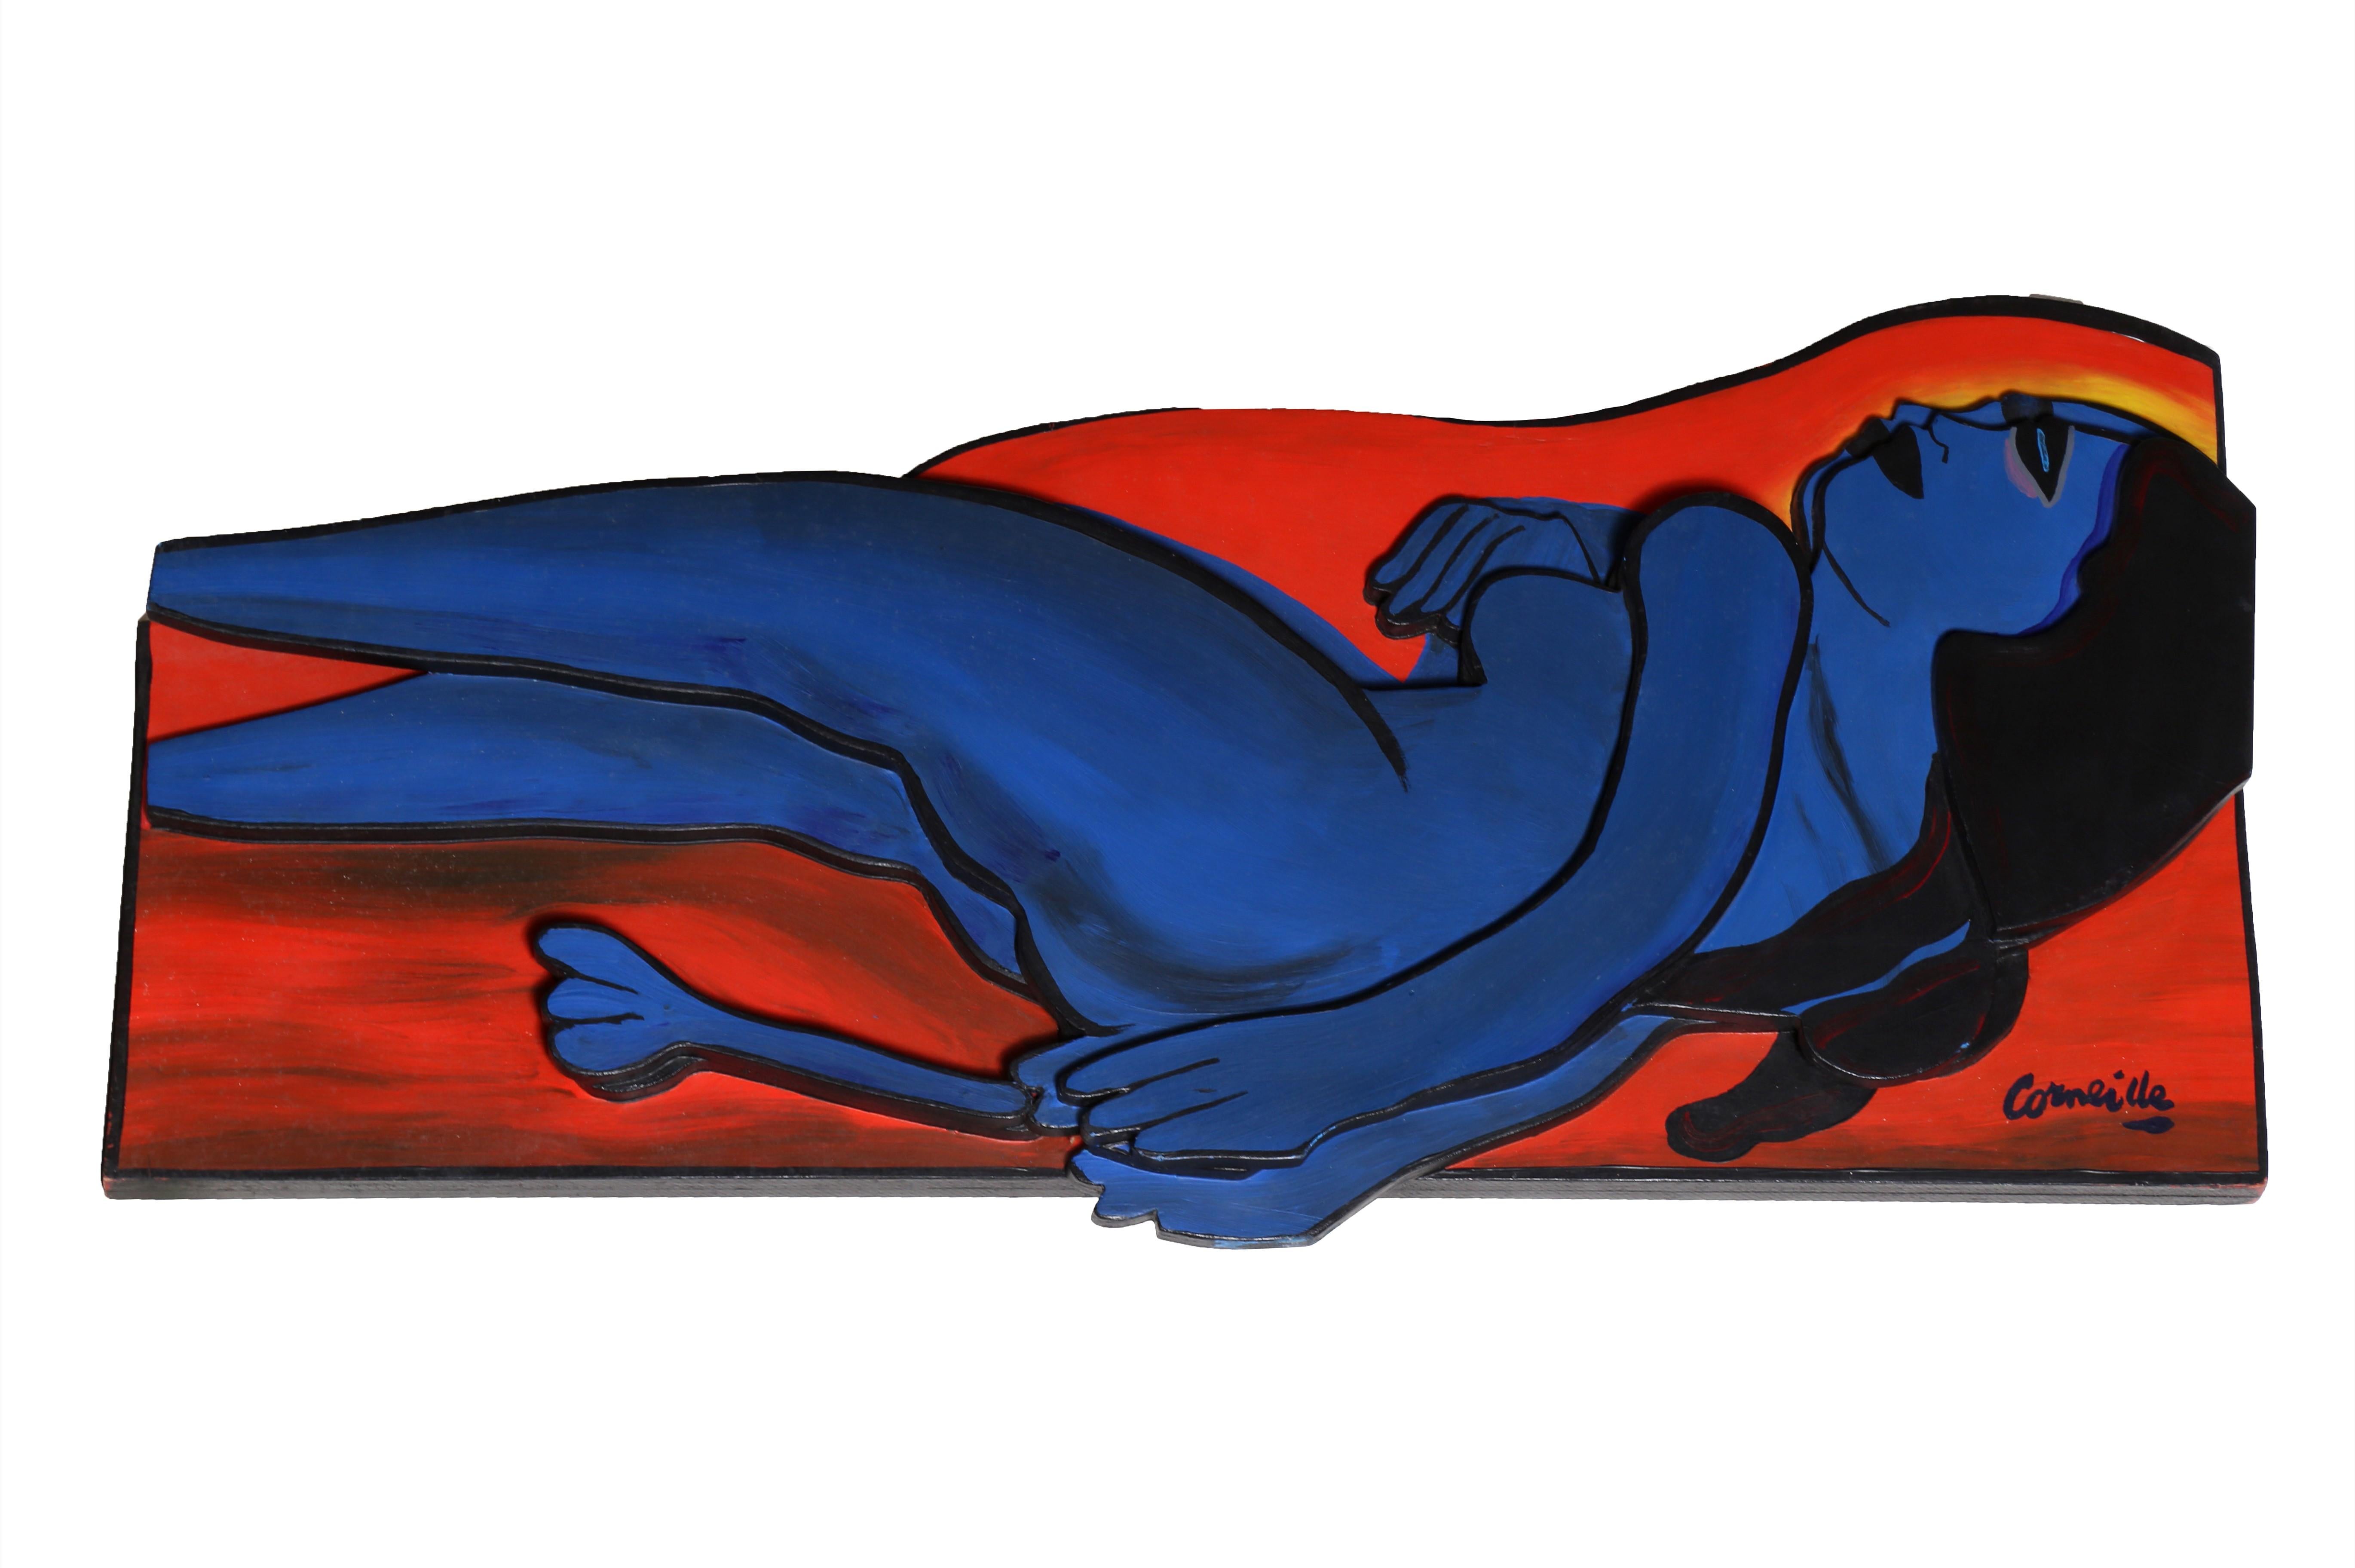 Femme en Bleu, Wall/Table Sculpture by Corneille